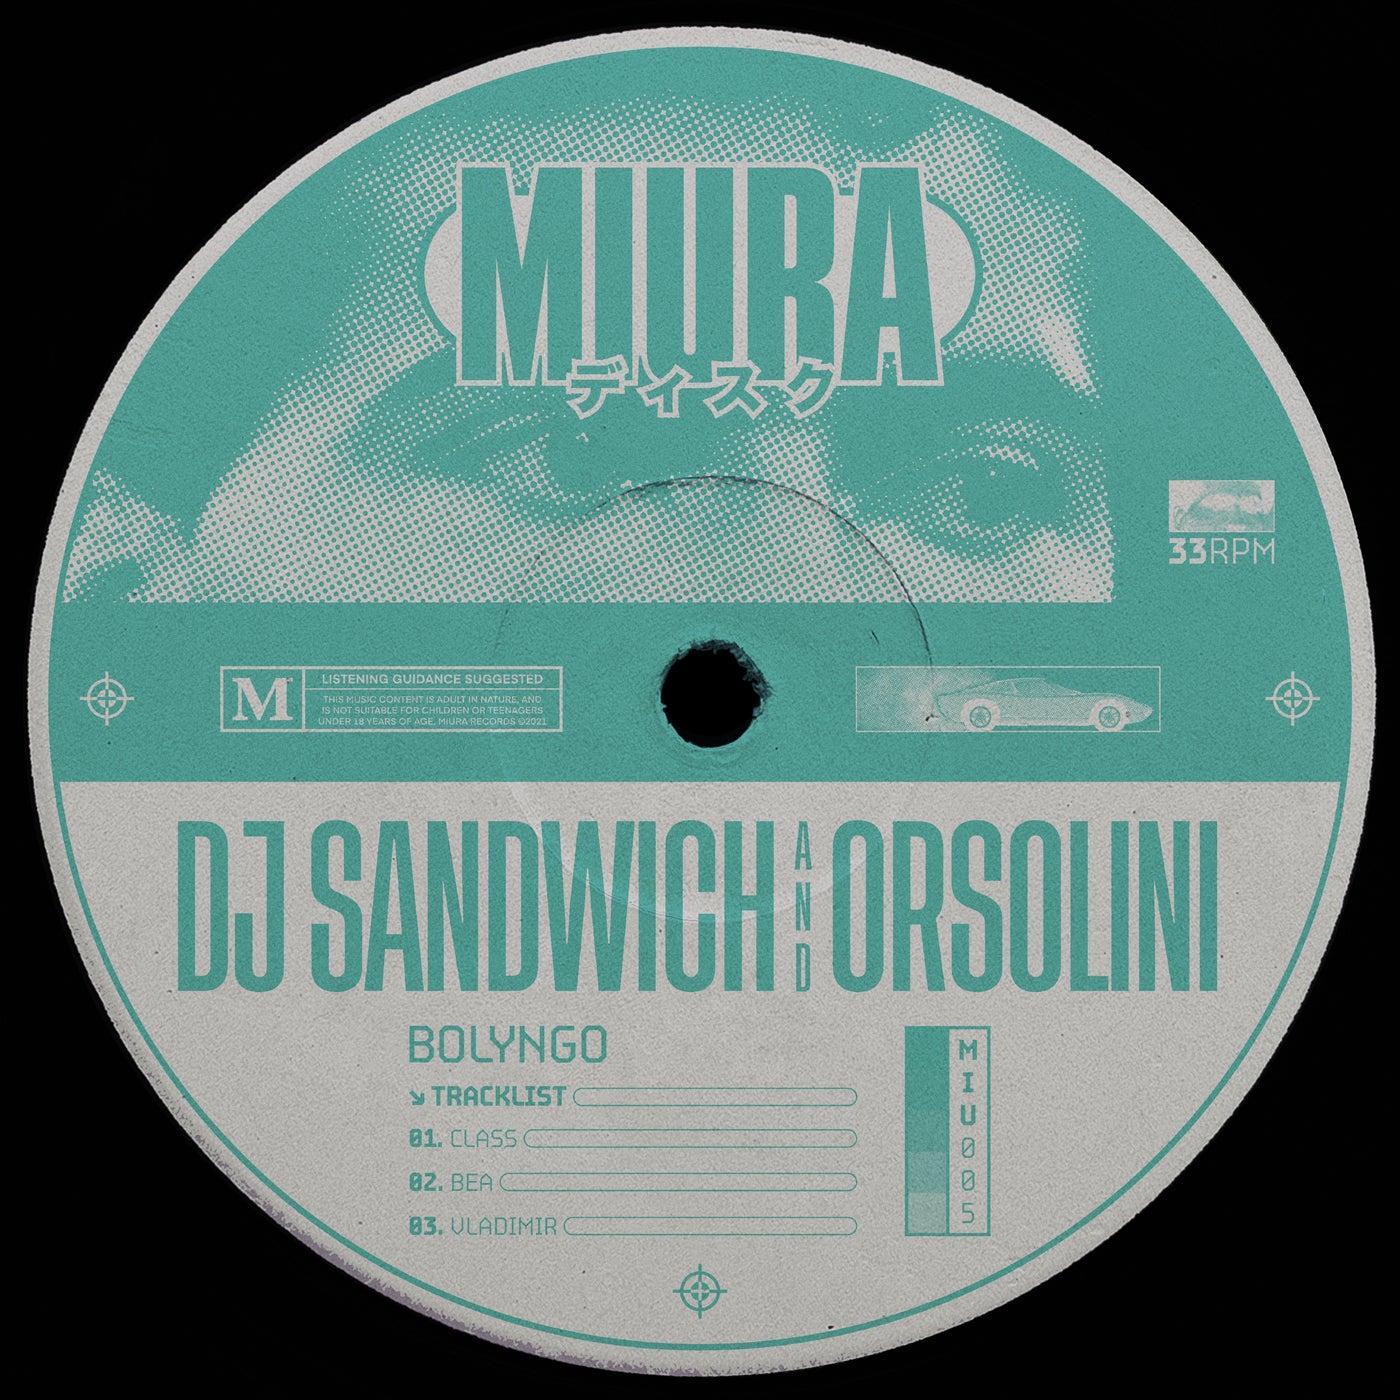 DJ Sandwich, Orsolini – Bolyngo [MIU005]